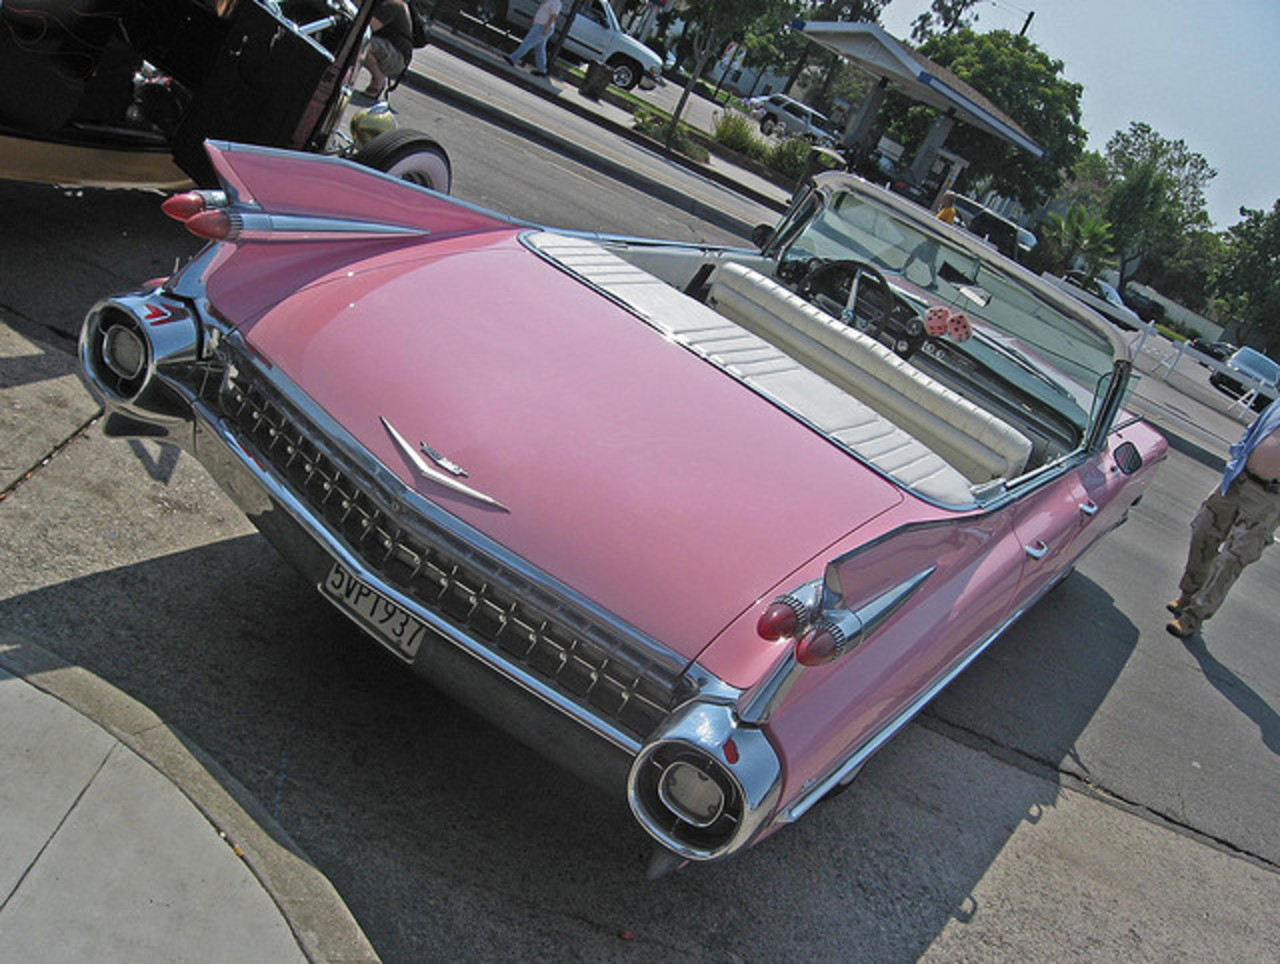 Cadillac Eldorado 1959 Pink